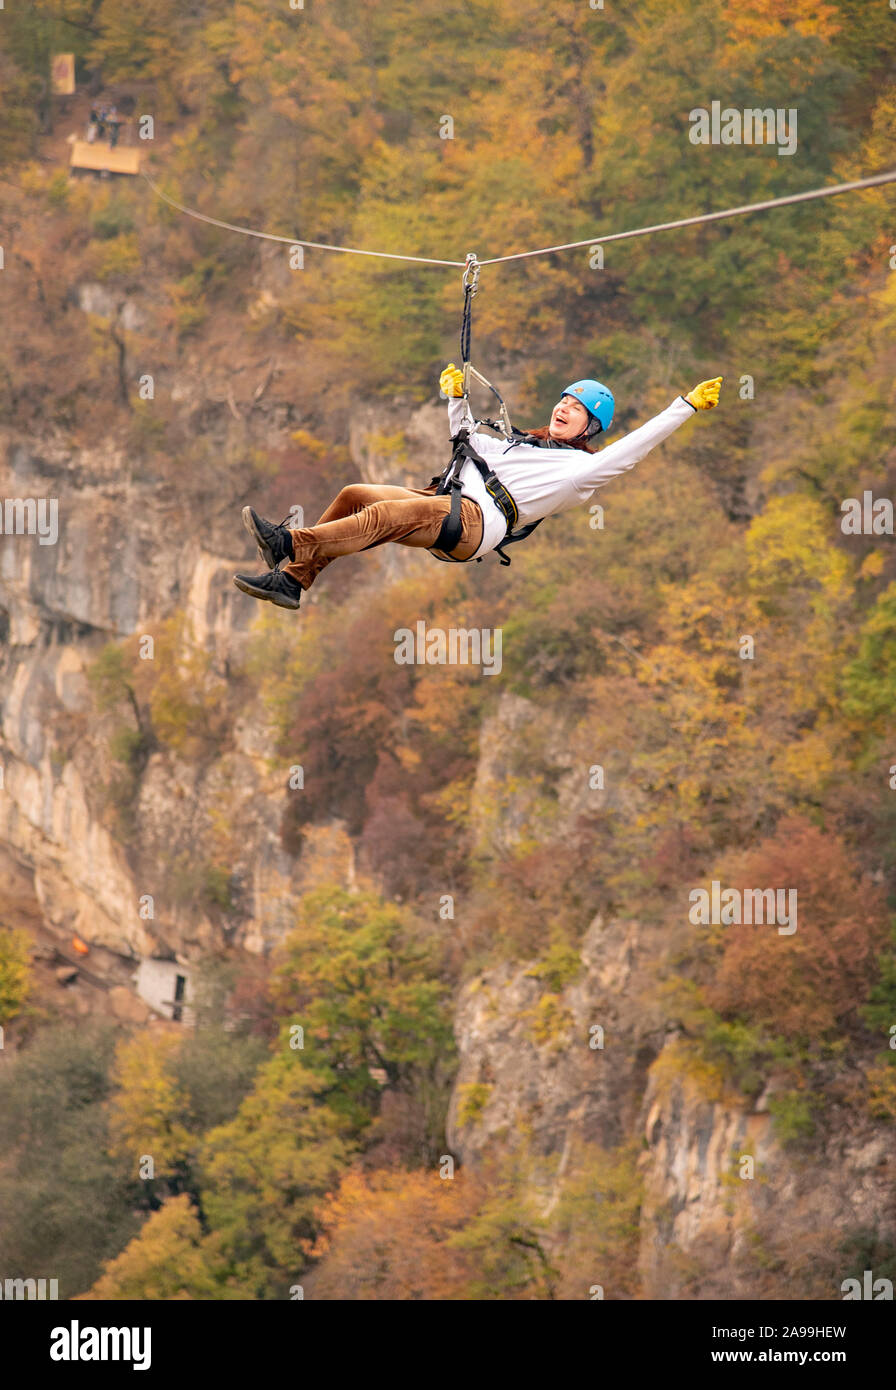 Eine Frau in einem Helm fliegt auf einer Seilrutsche über einen bunten Herbst Schlucht. Stockfoto